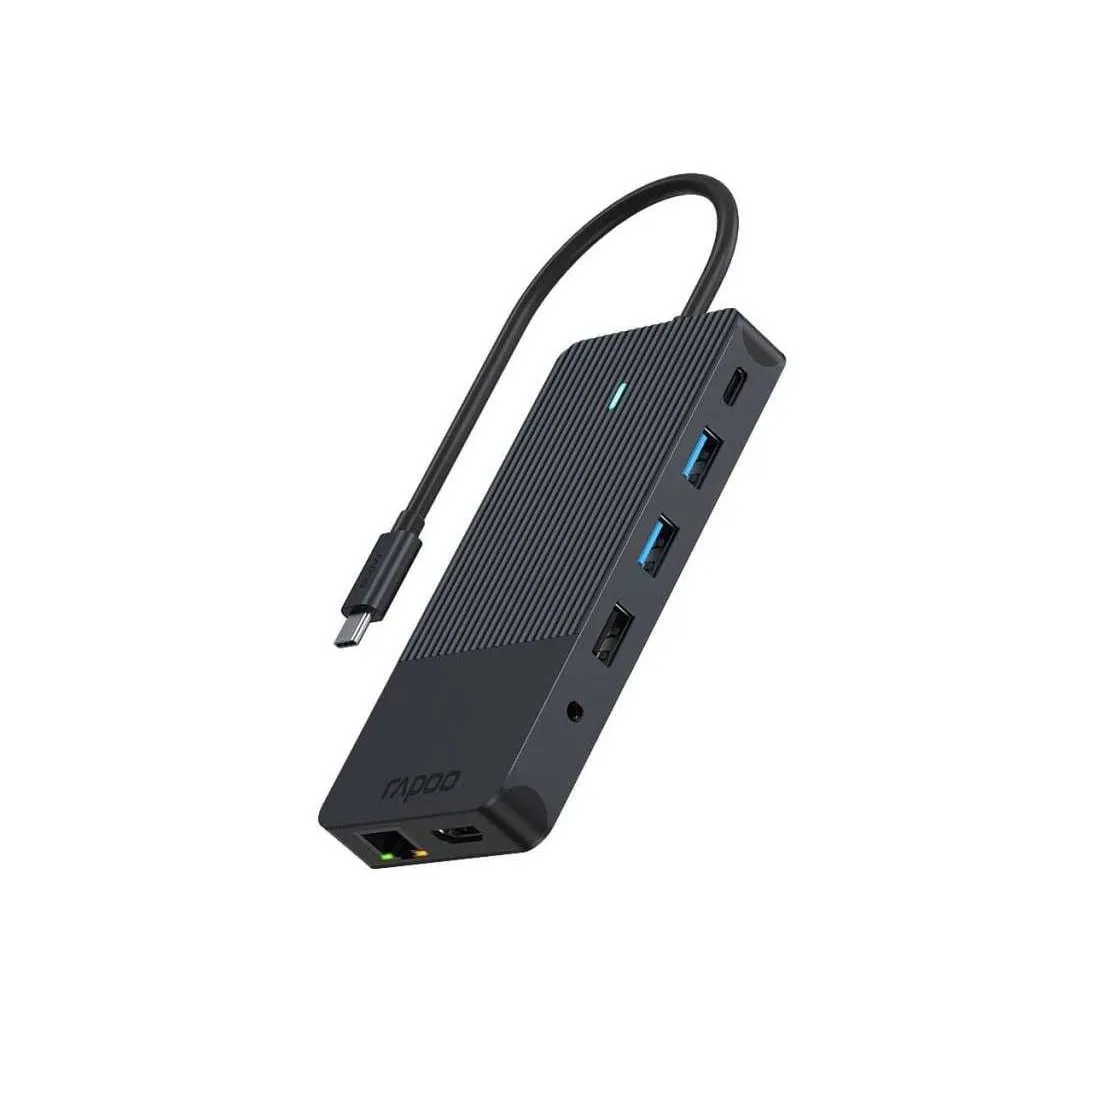 Rapoo USB-C Multiport Adapter, 12-in-1, grijs